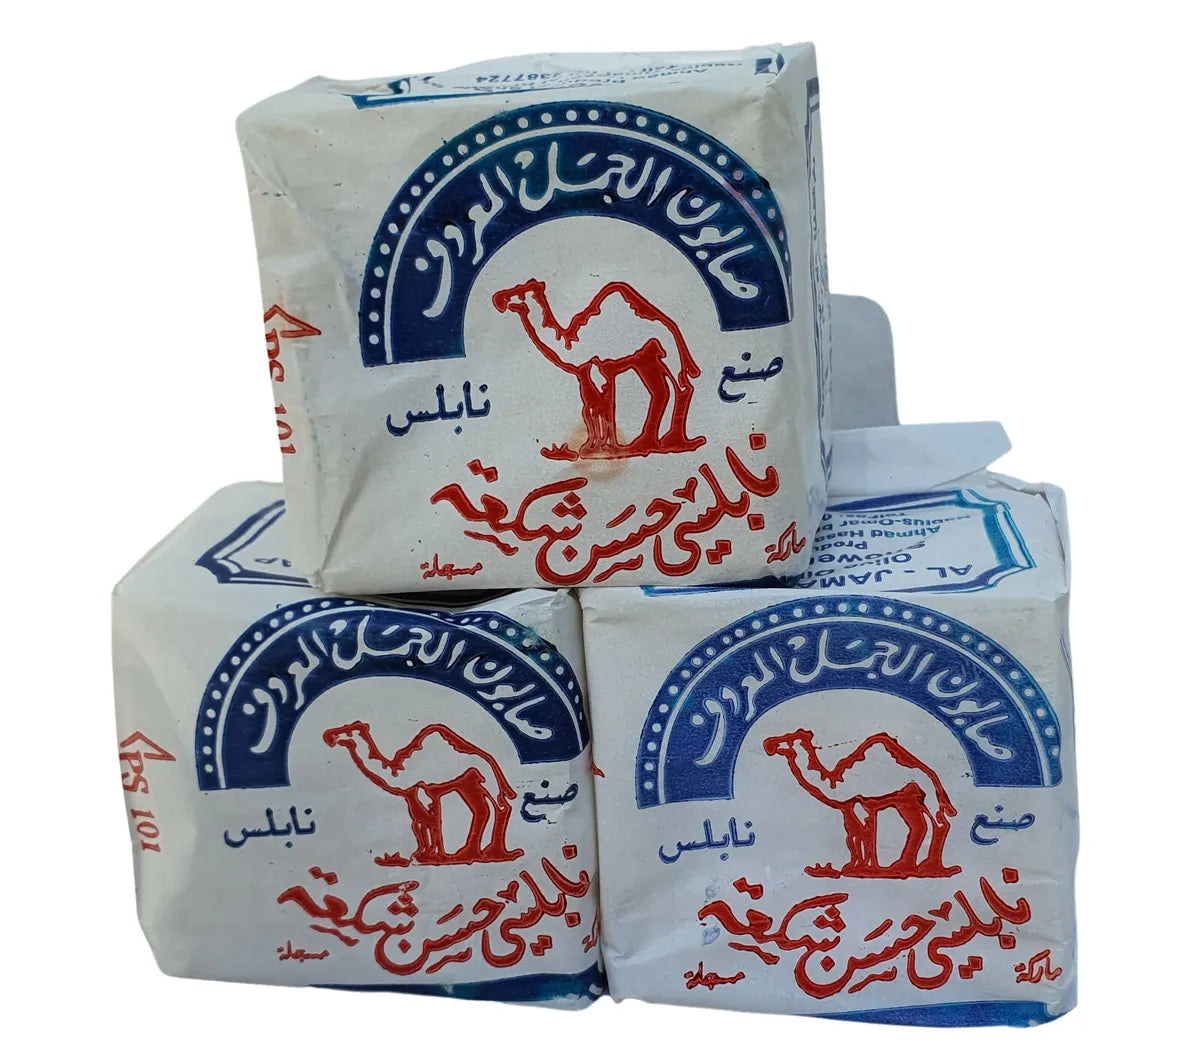 Camel Jamal Nabulsi Soap Bar